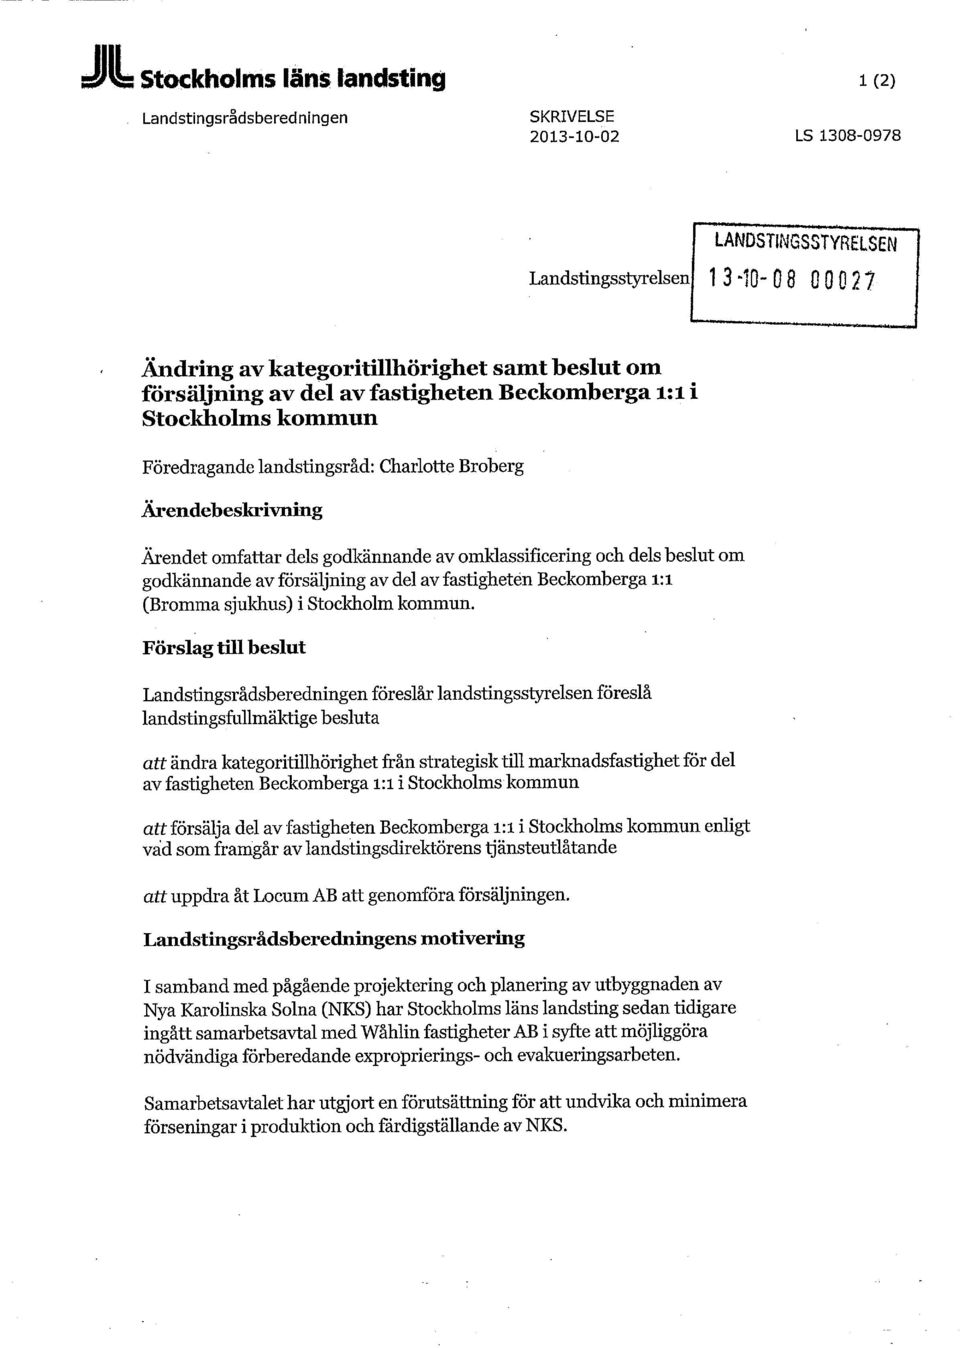 beslut om godkännande av försäljning av del av fastighetén Beckomberga i:i (Bromma sjukhus) i Stockholm kommun.